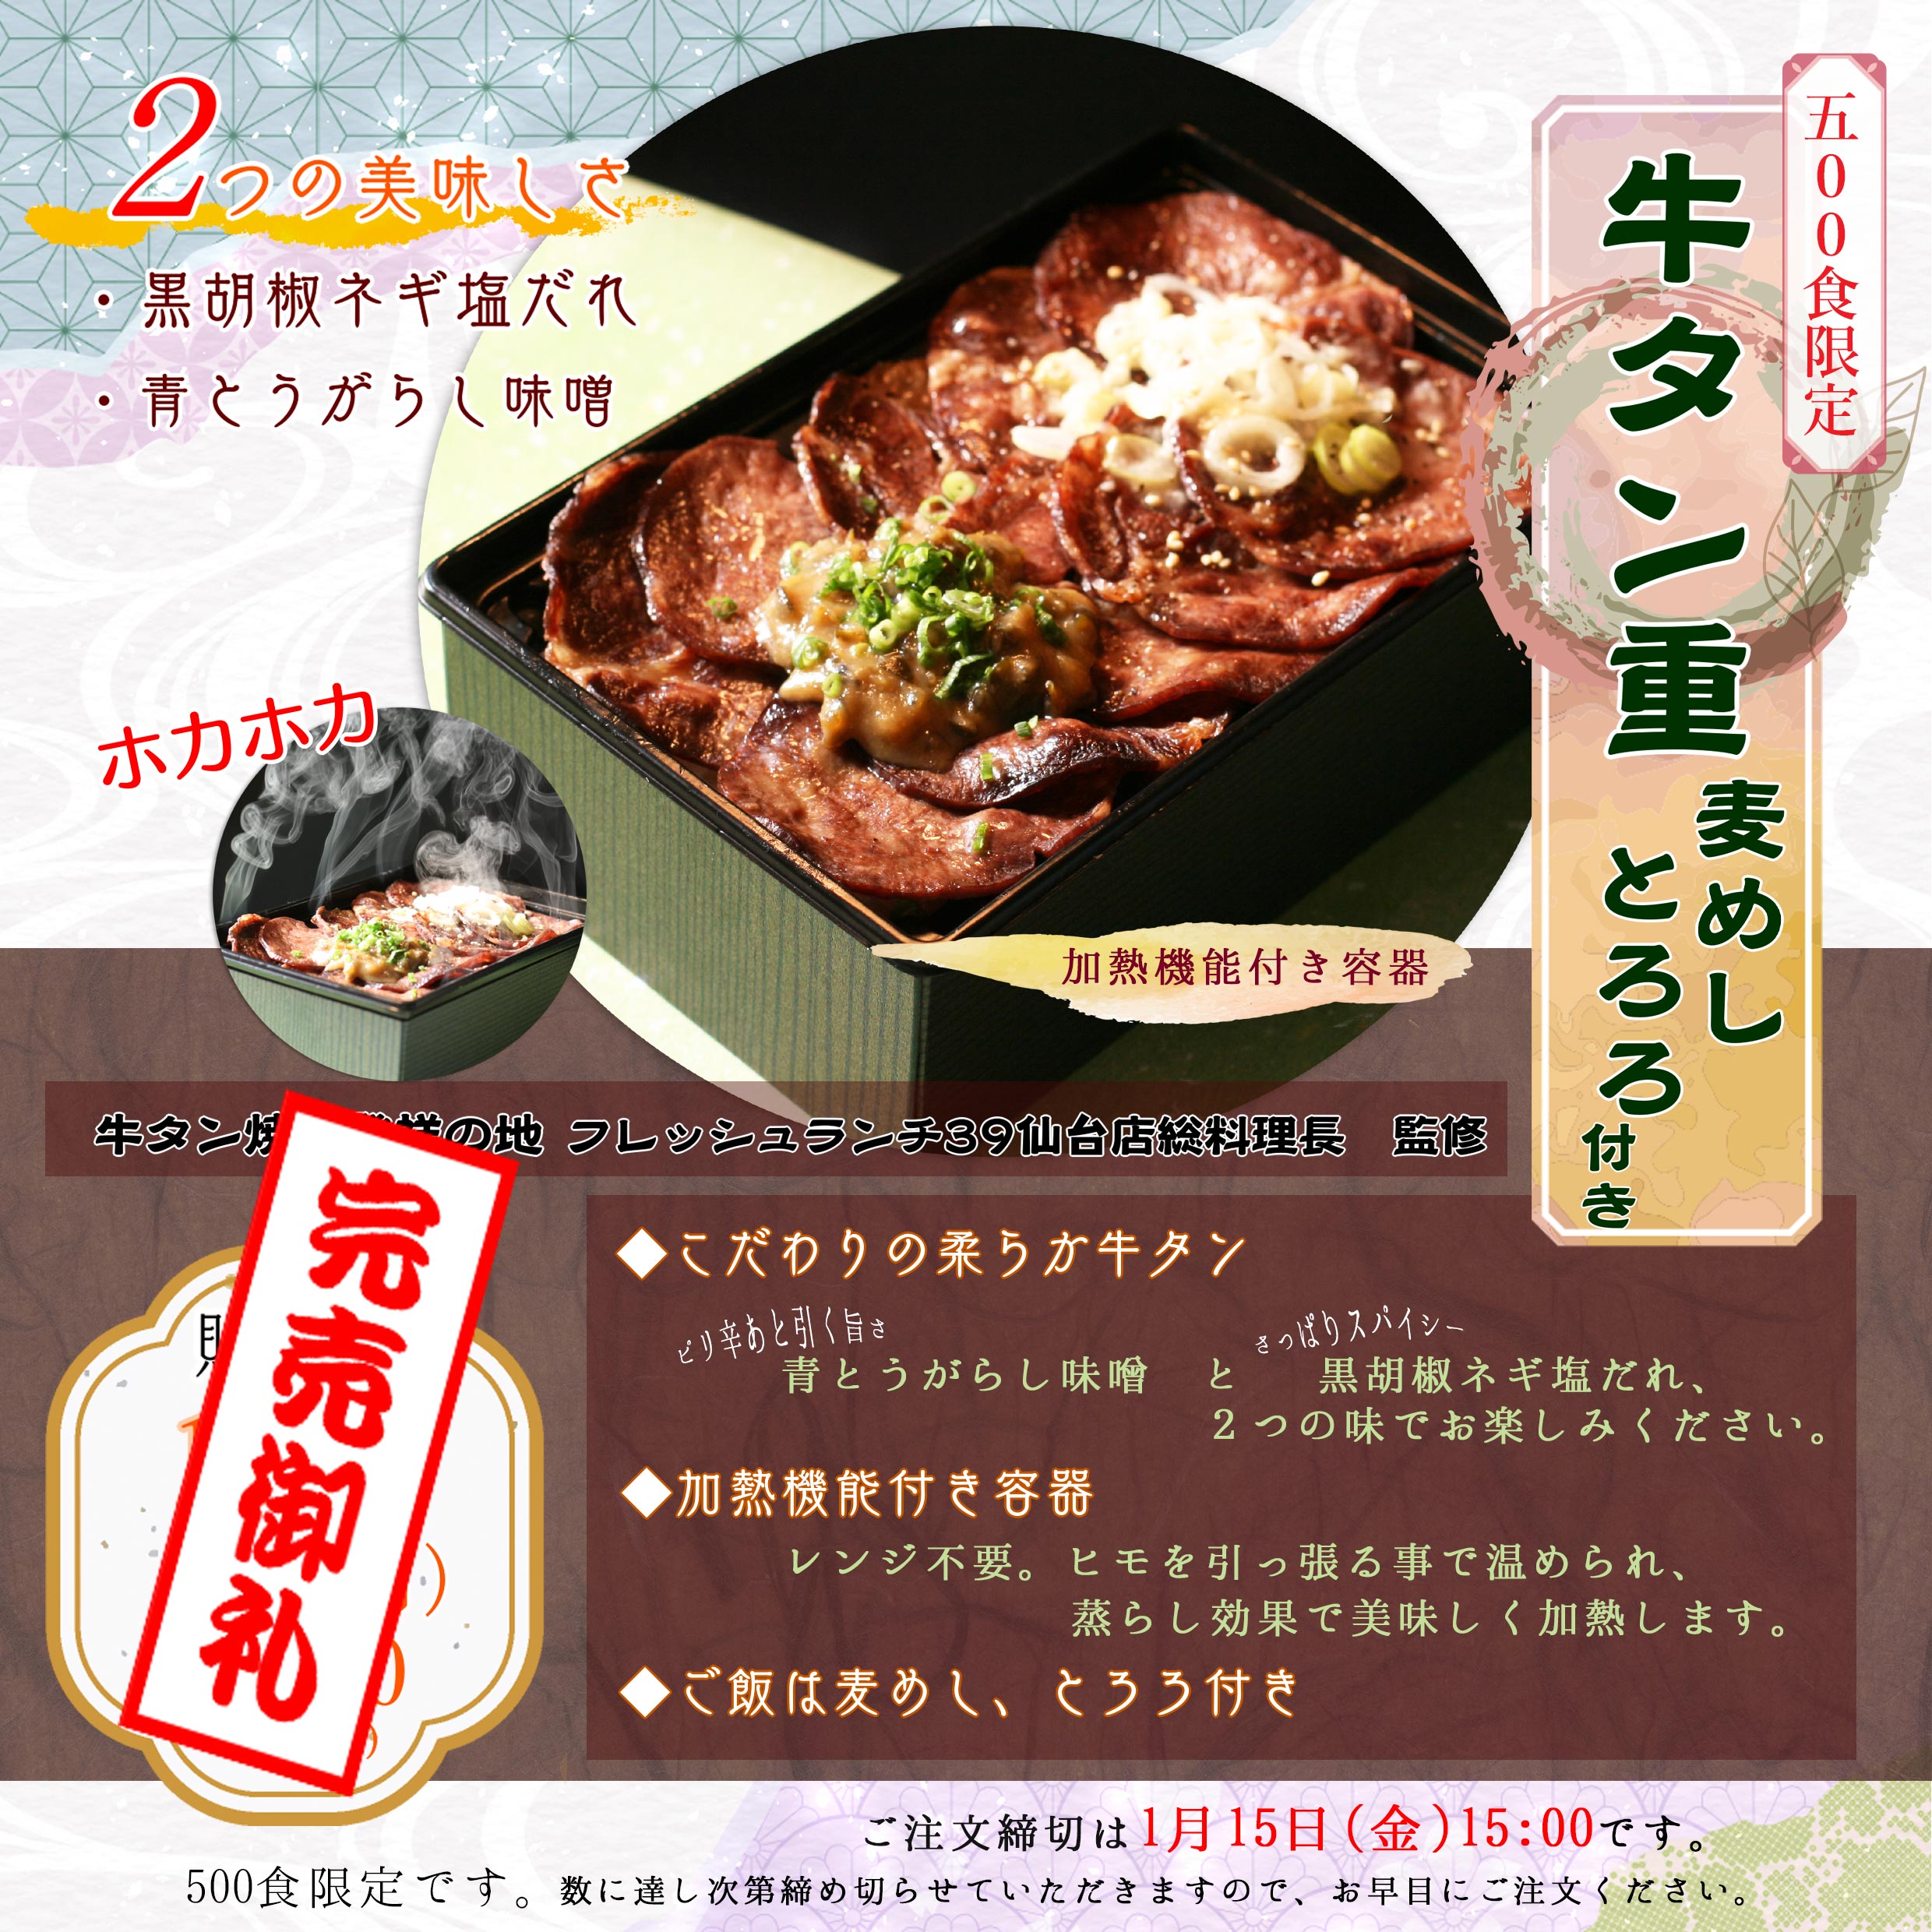 1月19日(火)　仙台店料理長監修「牛タン重」を500食限定販売します。